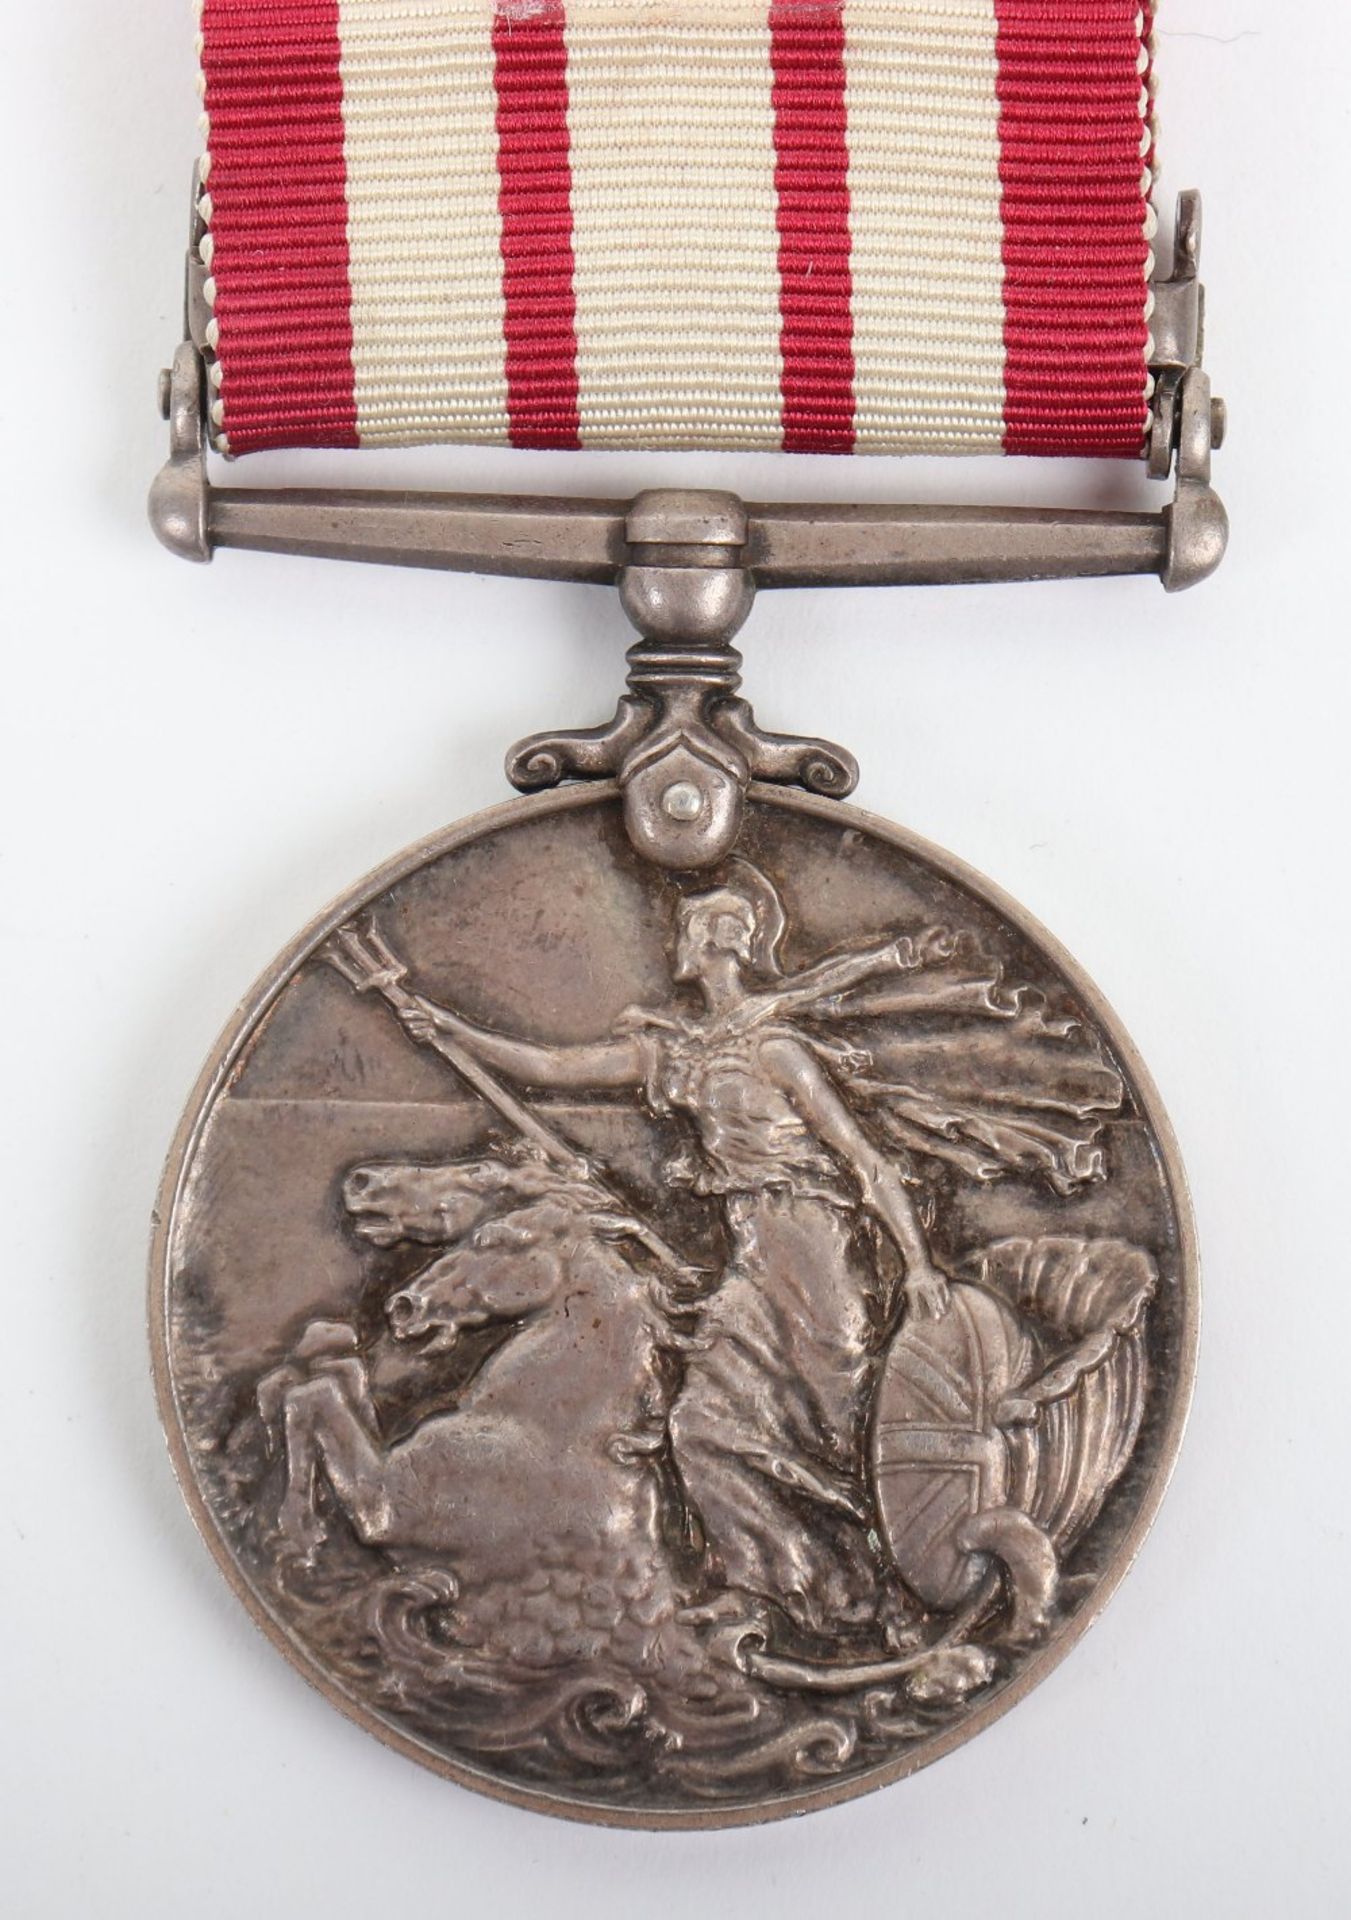 George VI Naval General Service Medal 1915-62 Royal Naval Volunteer Reserve - Image 5 of 5